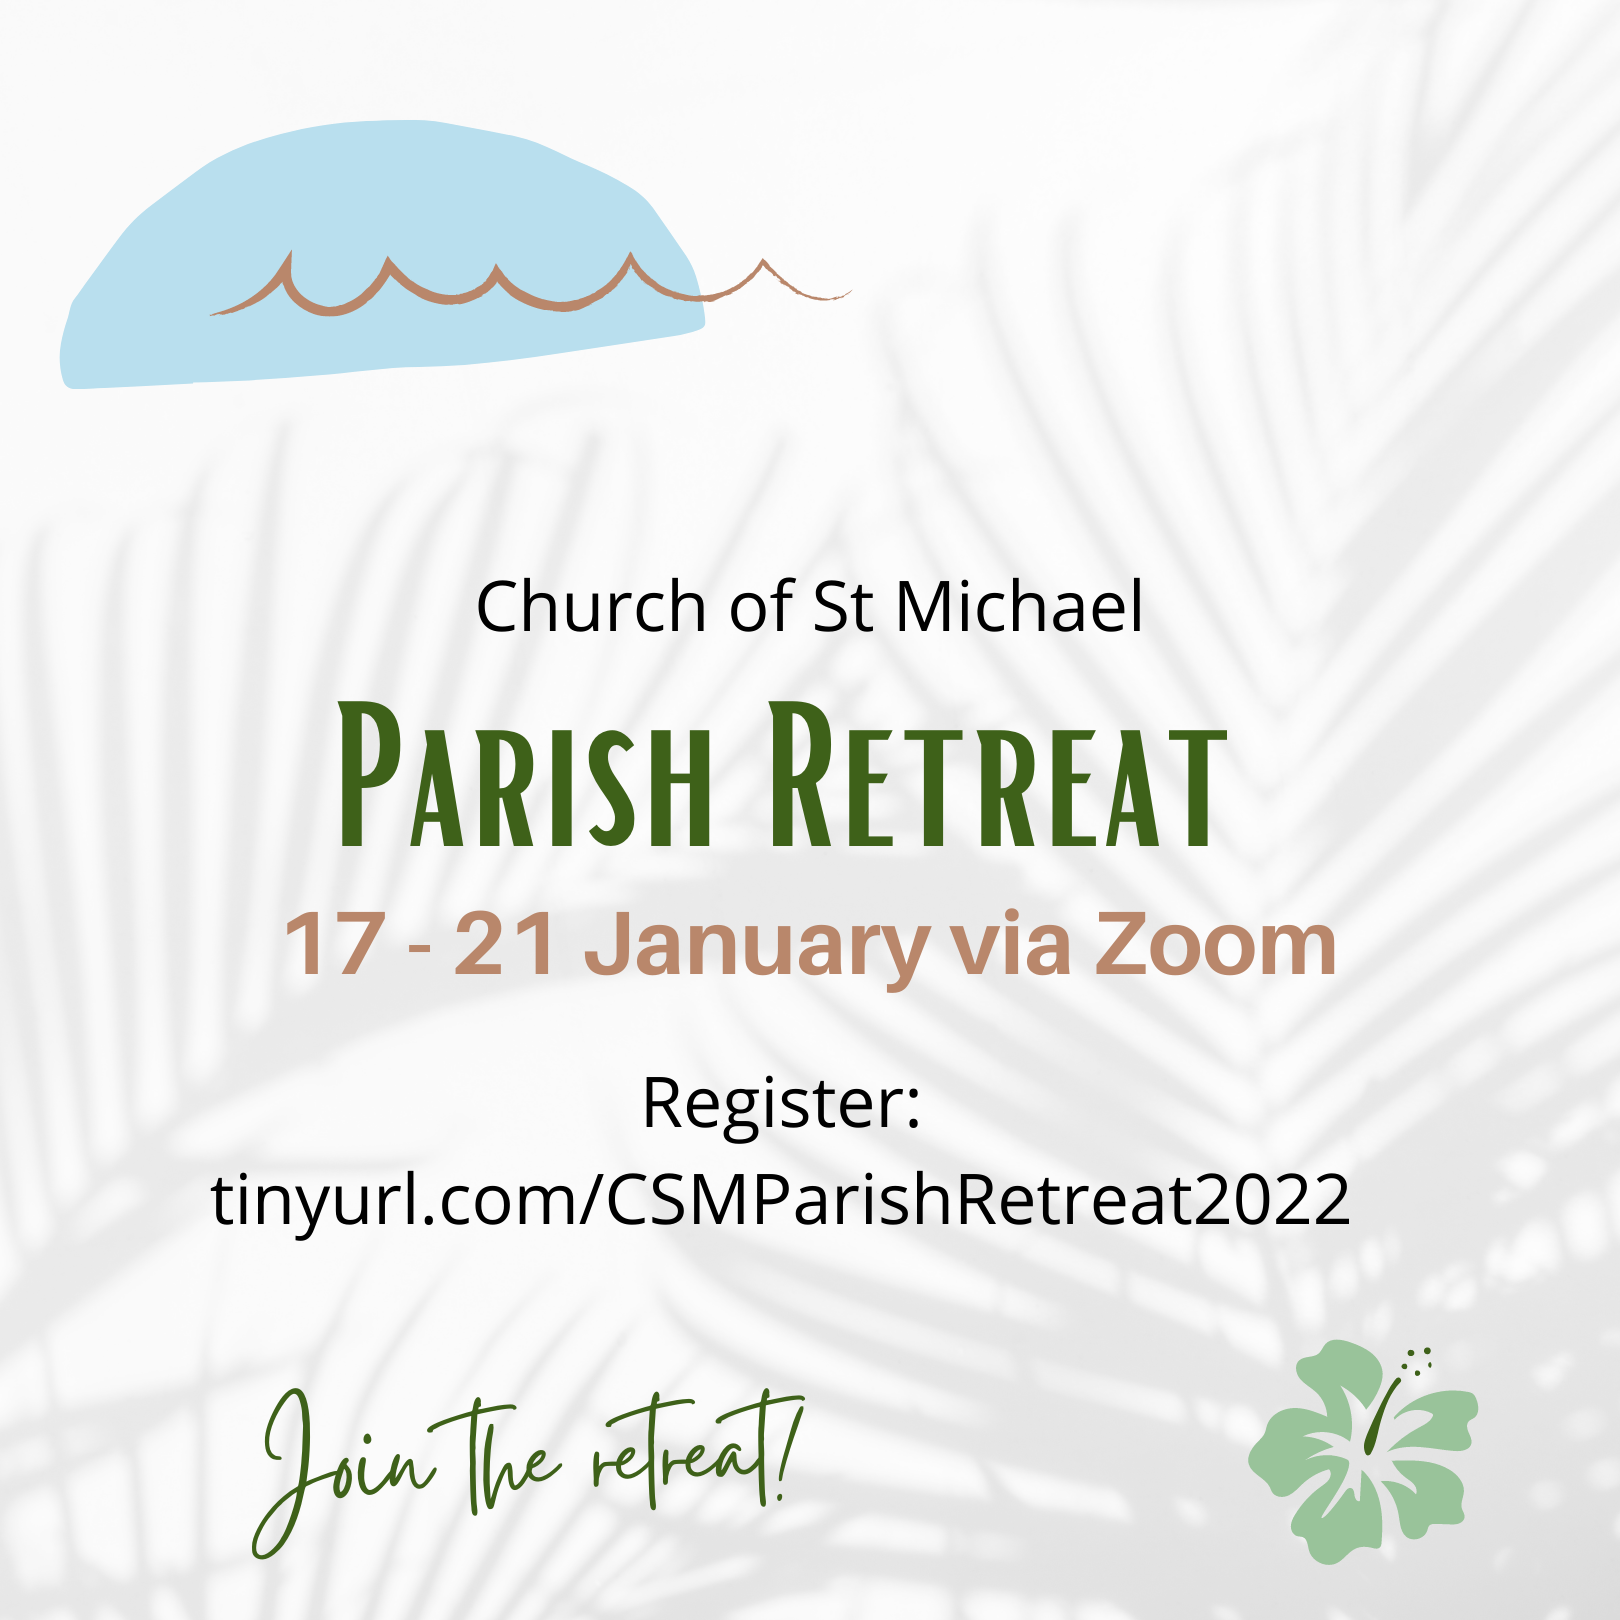 Parish Retreat